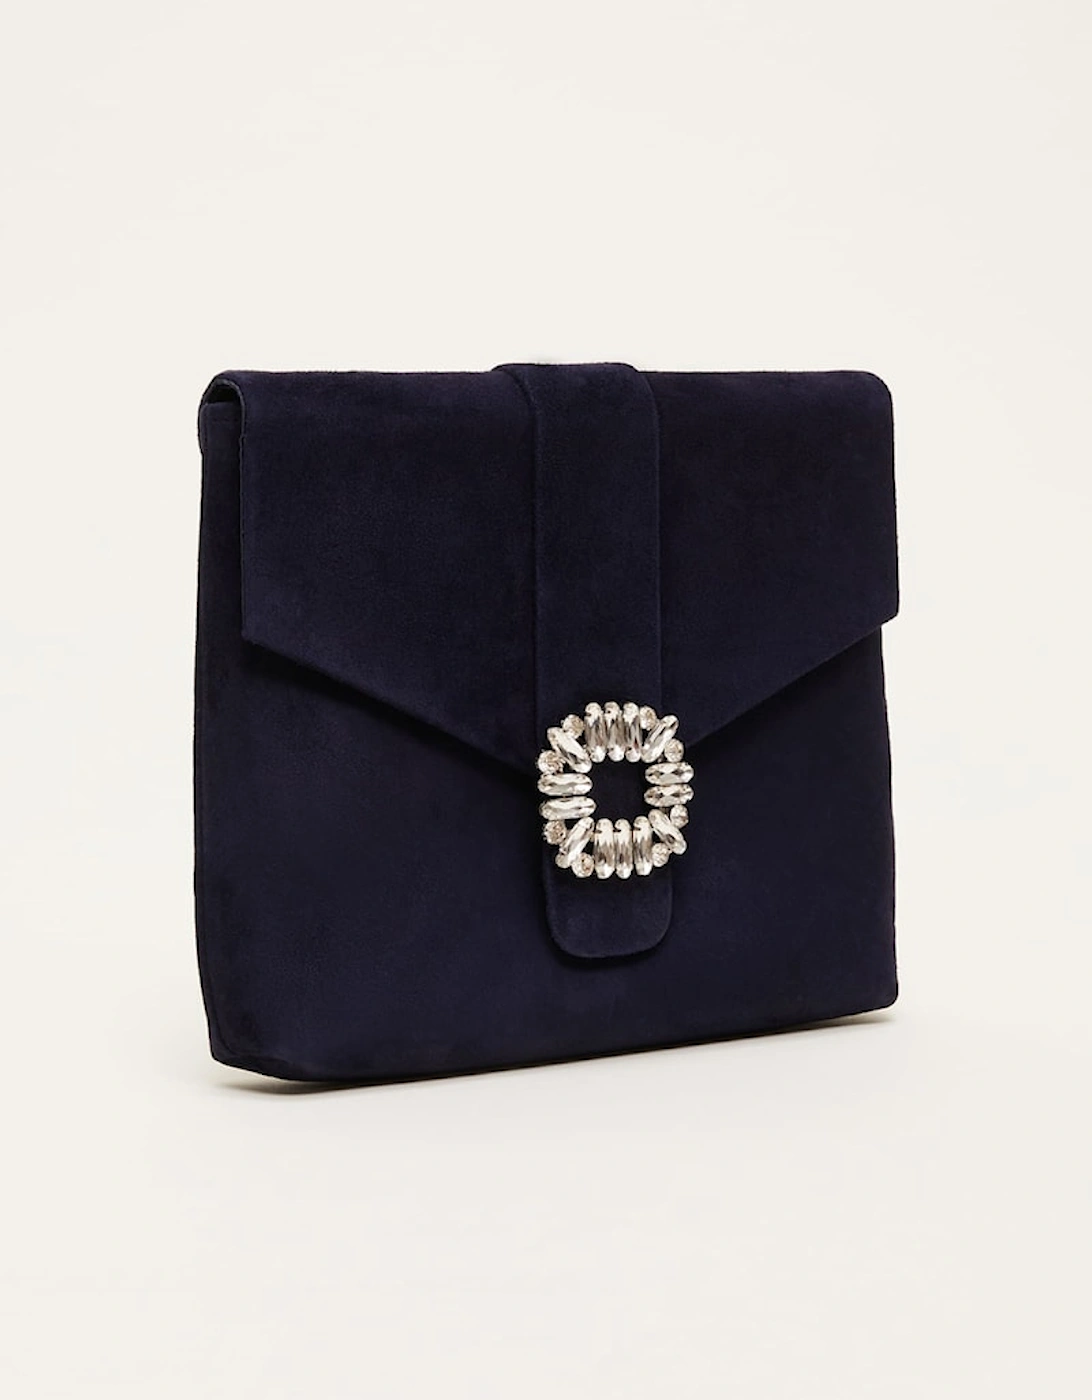 Embellished Suede Envelope Clutch Bag